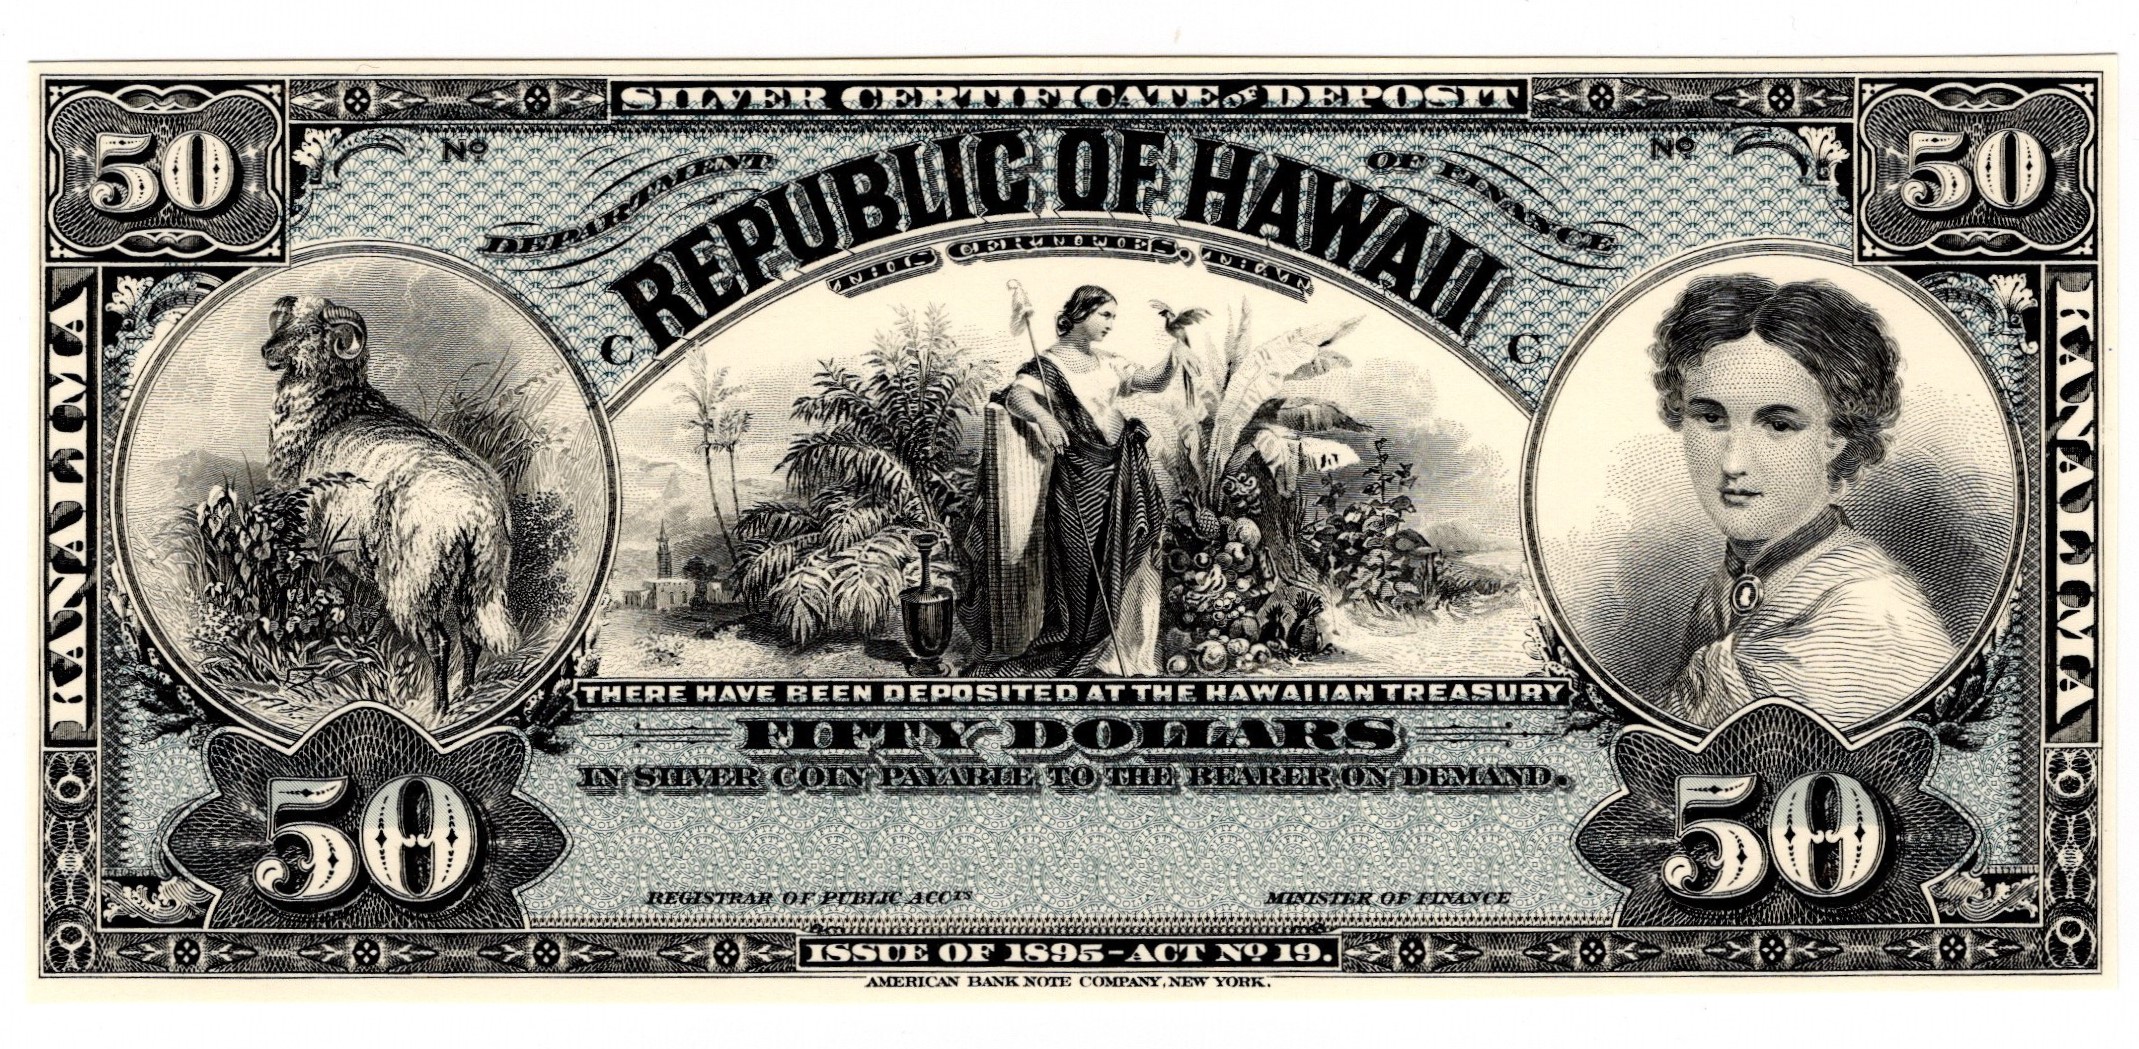 Hawaii 69 act